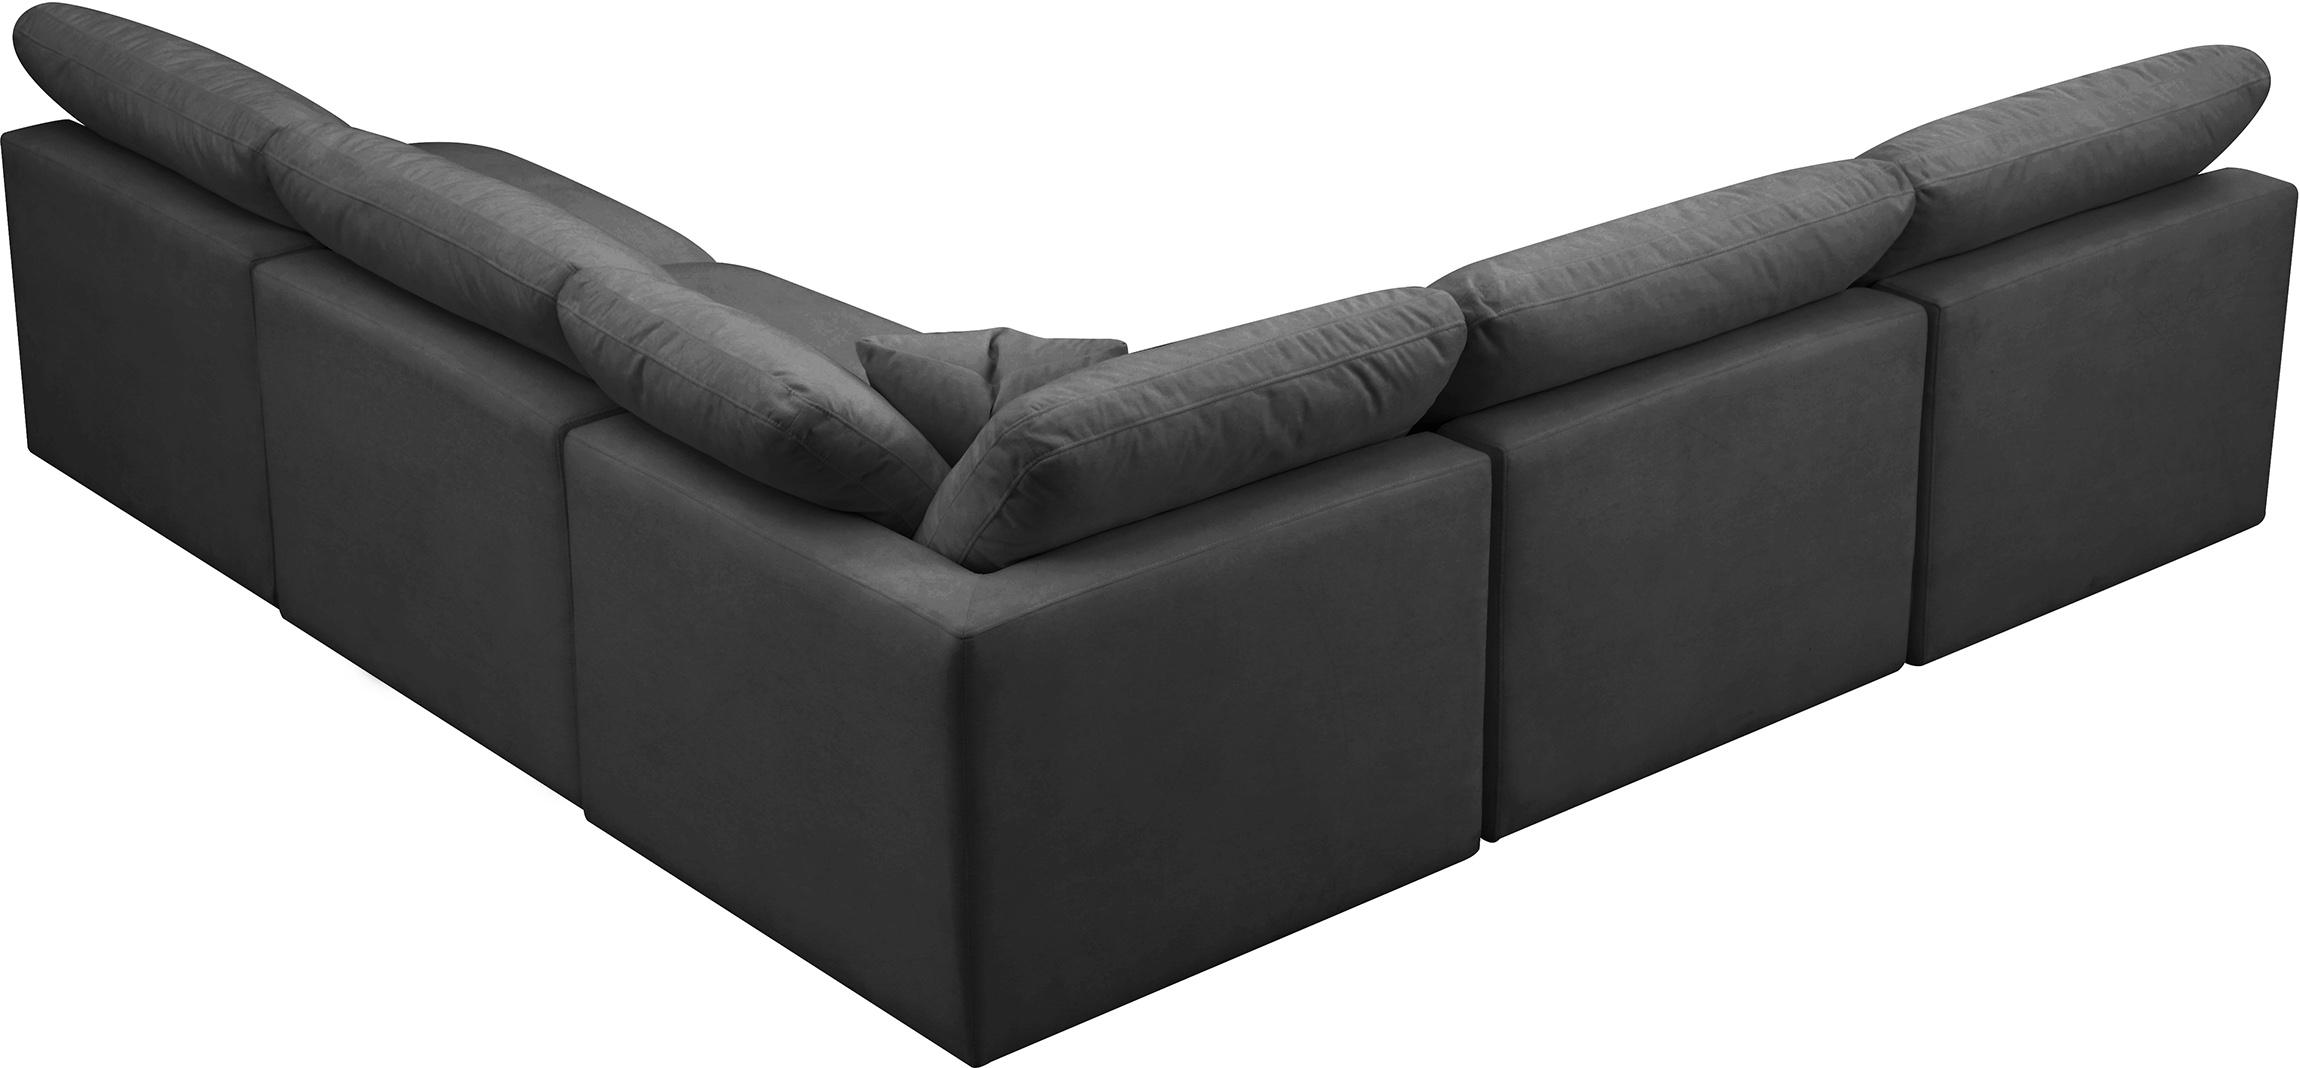 

    
Meridian Furniture 602Black-Sec5B Modular Sectional Sofa Black 602Black-Sec5B
